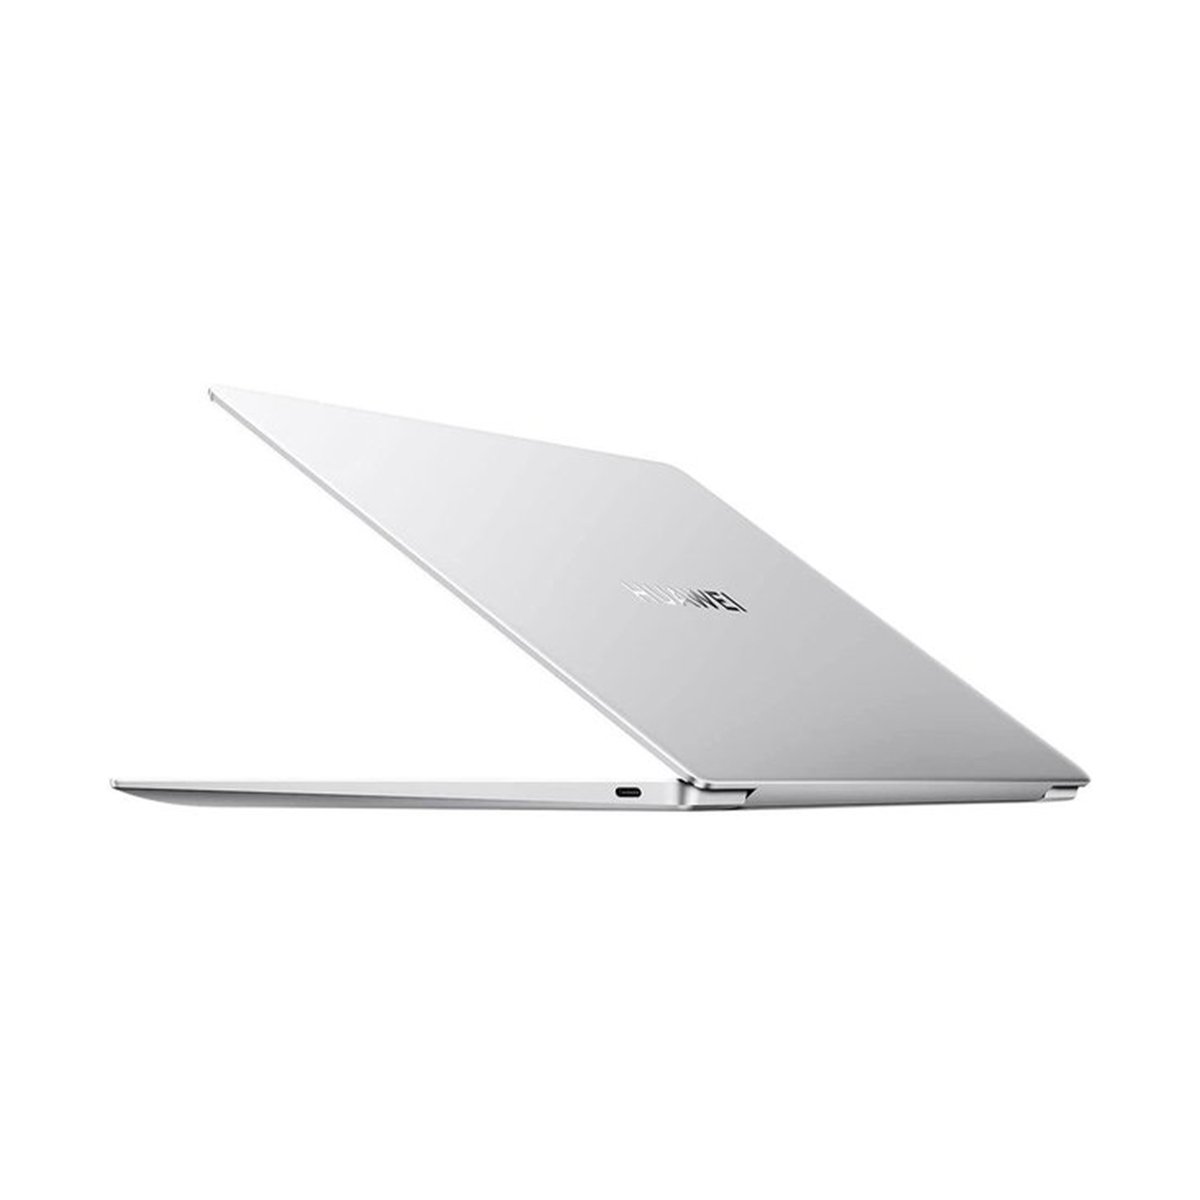 Huawei MateBook 13S (2021) Intel Core i7,16GB RAM,512GB SSD,Intel Iris Graphics,13.4" Display,Window 10,Silver,English/Arabic Keyboard